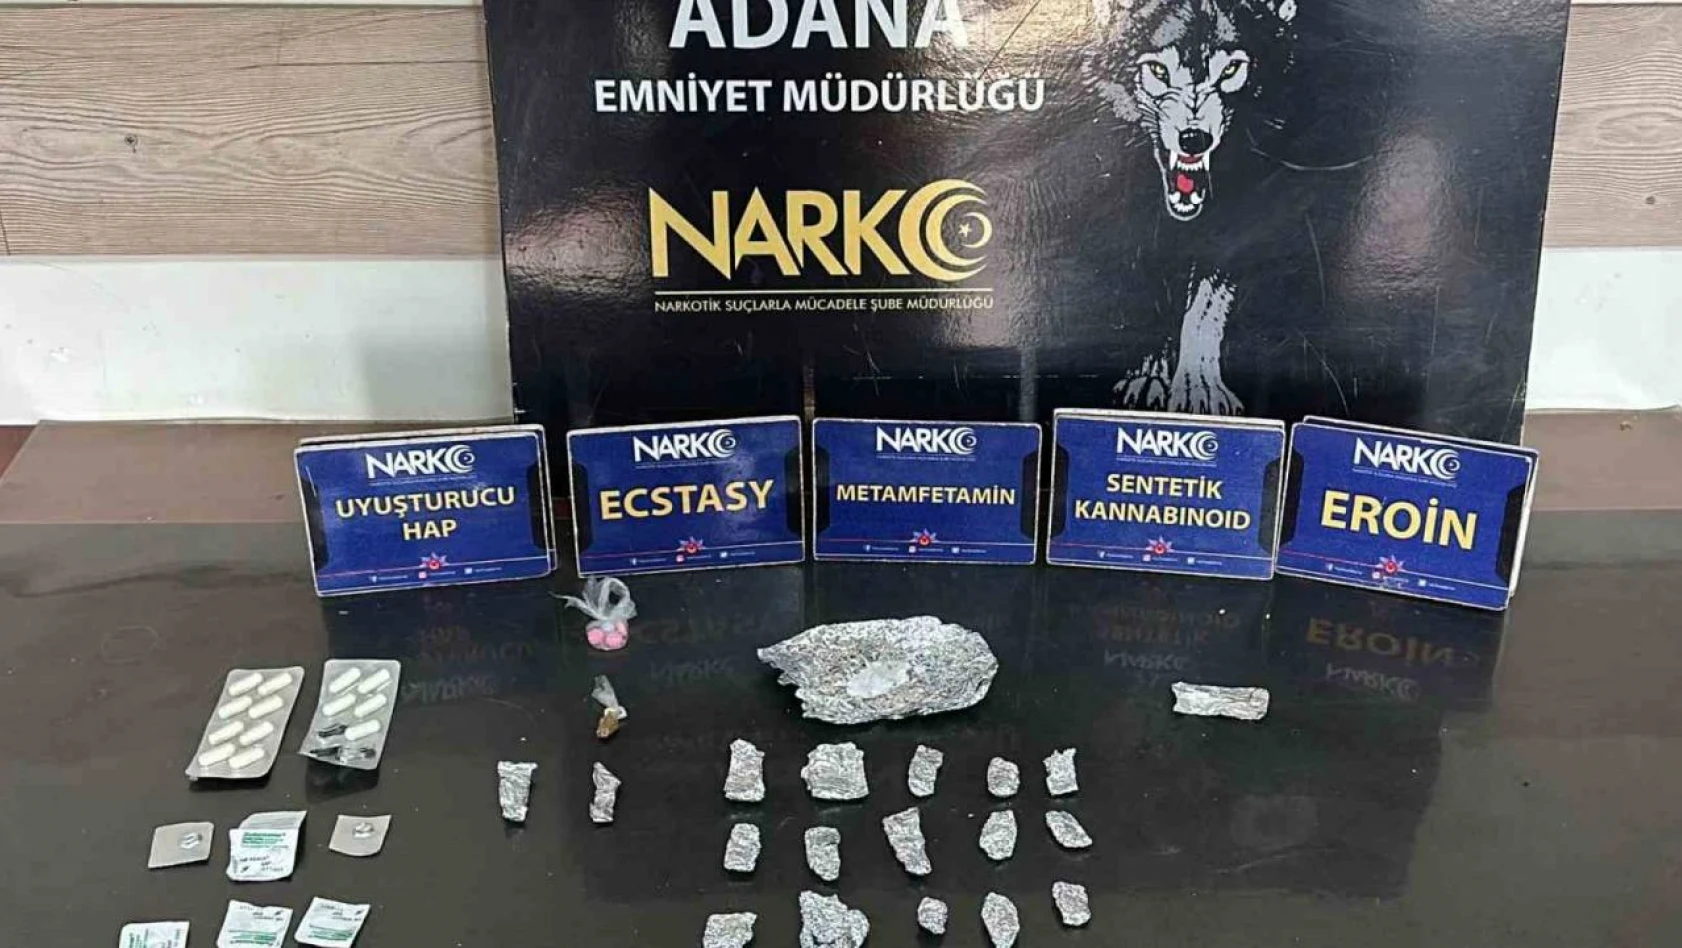 Adana'da narkotik polislerinin yakaladığı 2 uyuşturucu satıcısı tutuklandı